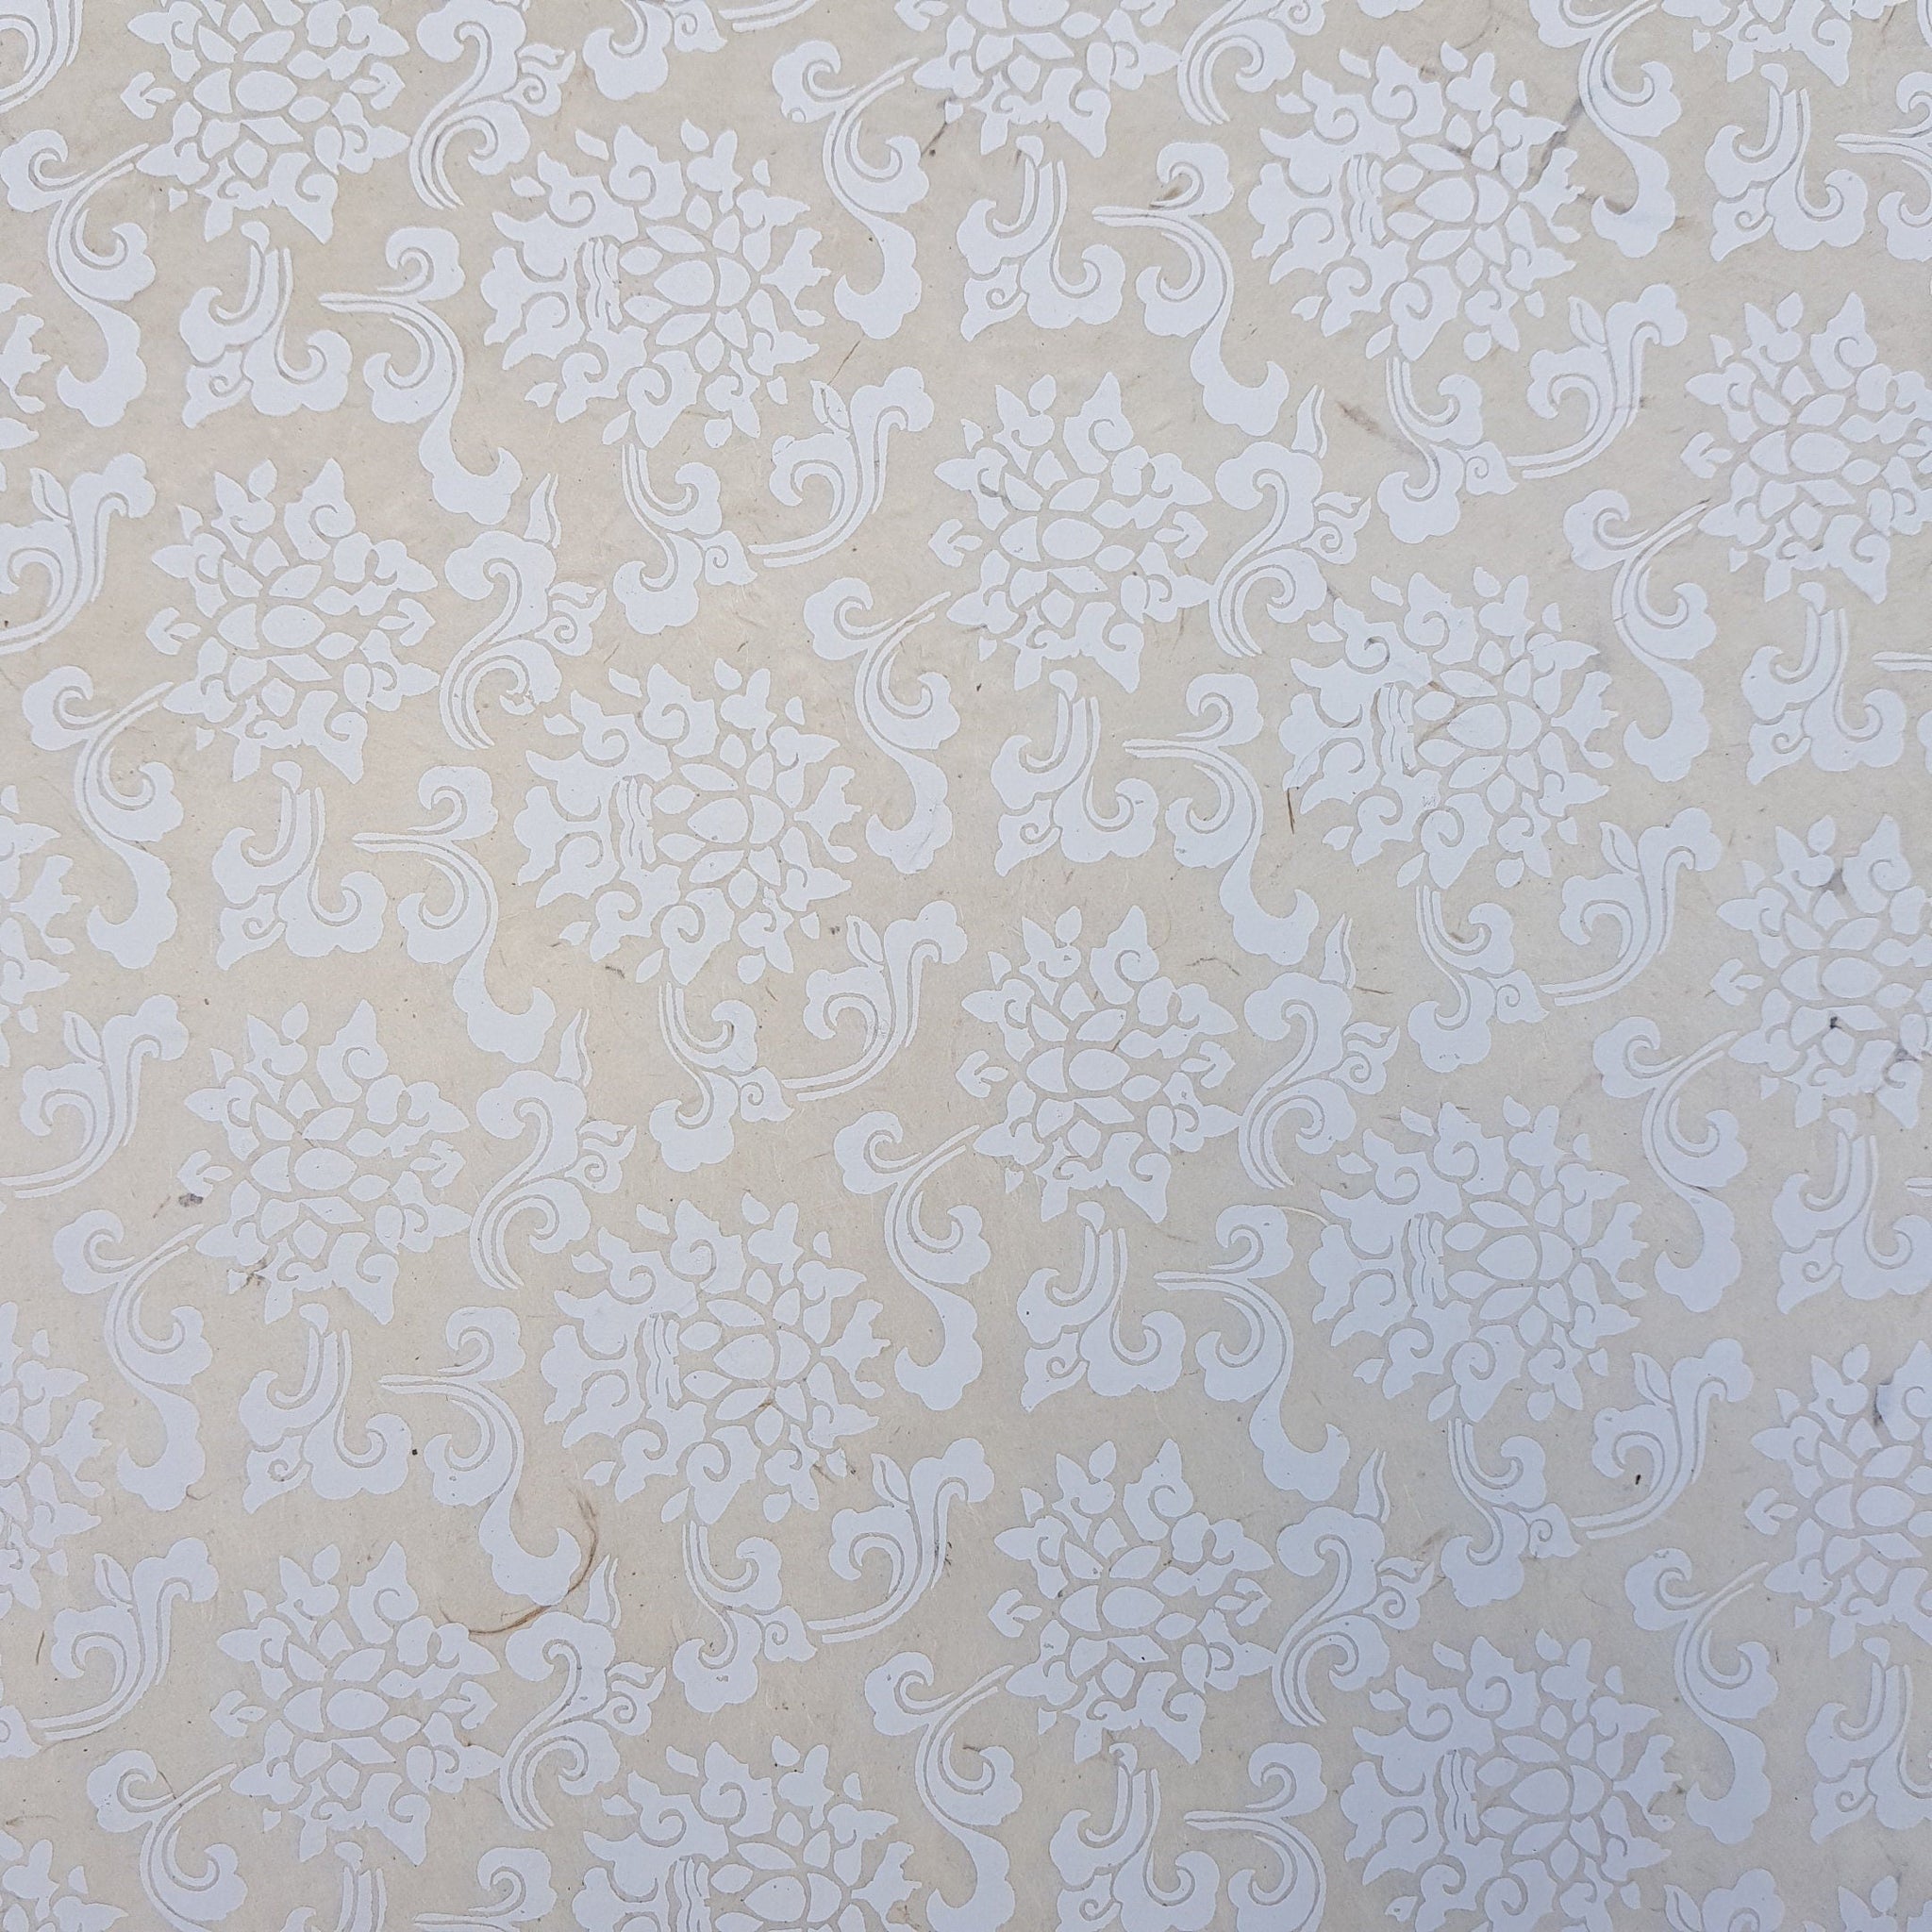 Sand on Natural Lotus Motif  Print on Lokta Paper, Tree Free & Sustainable